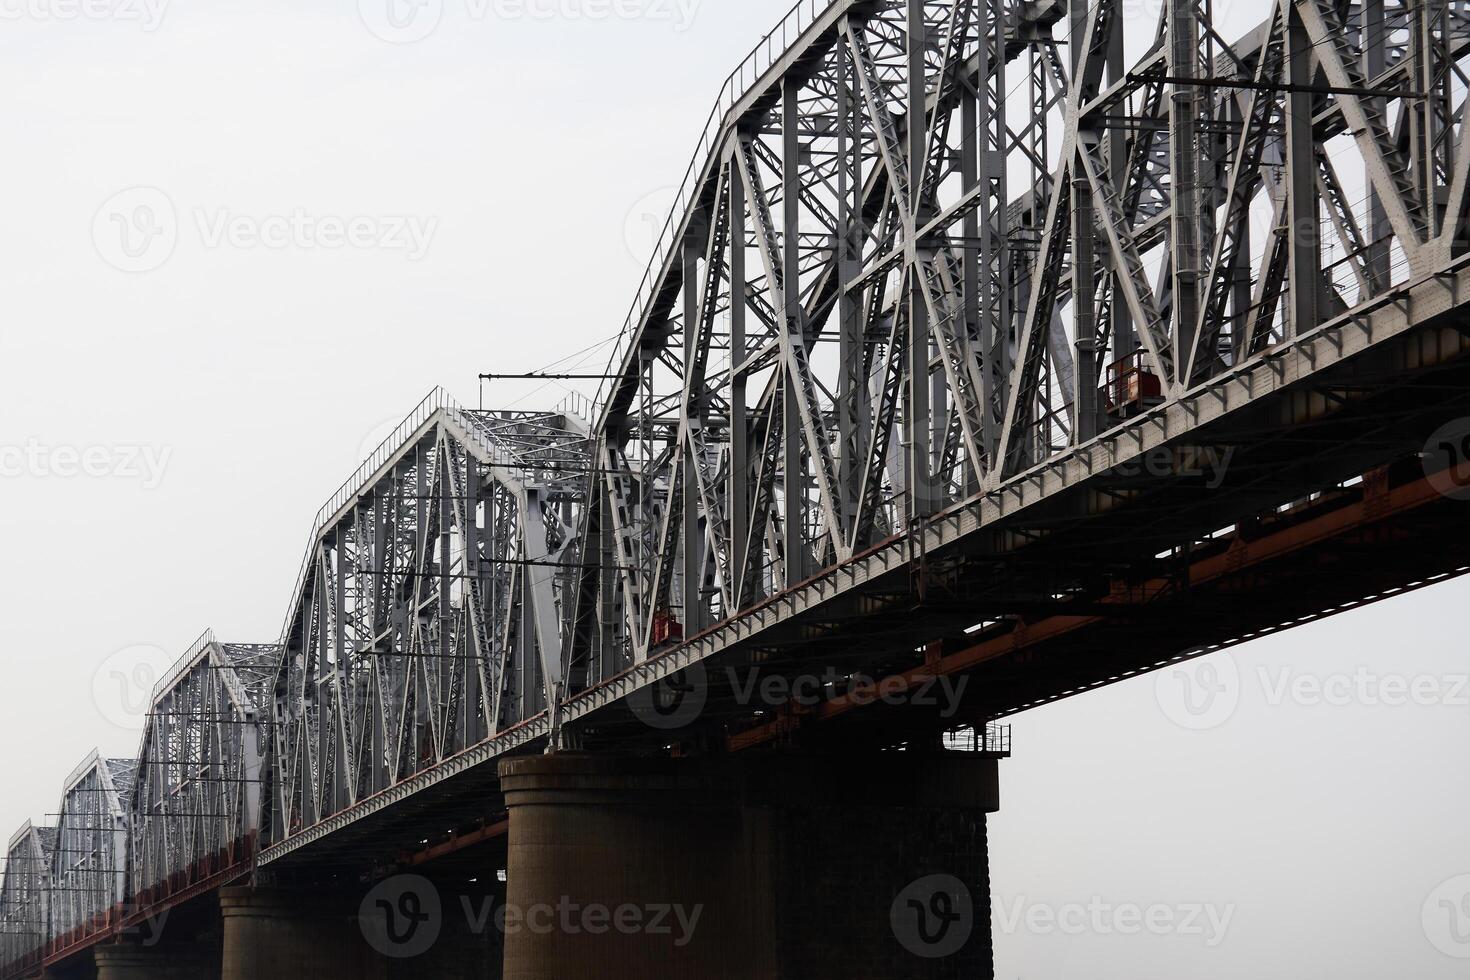 meerdere overspanningen van een spoorweg truss brug tegen een bewolkt lucht foto